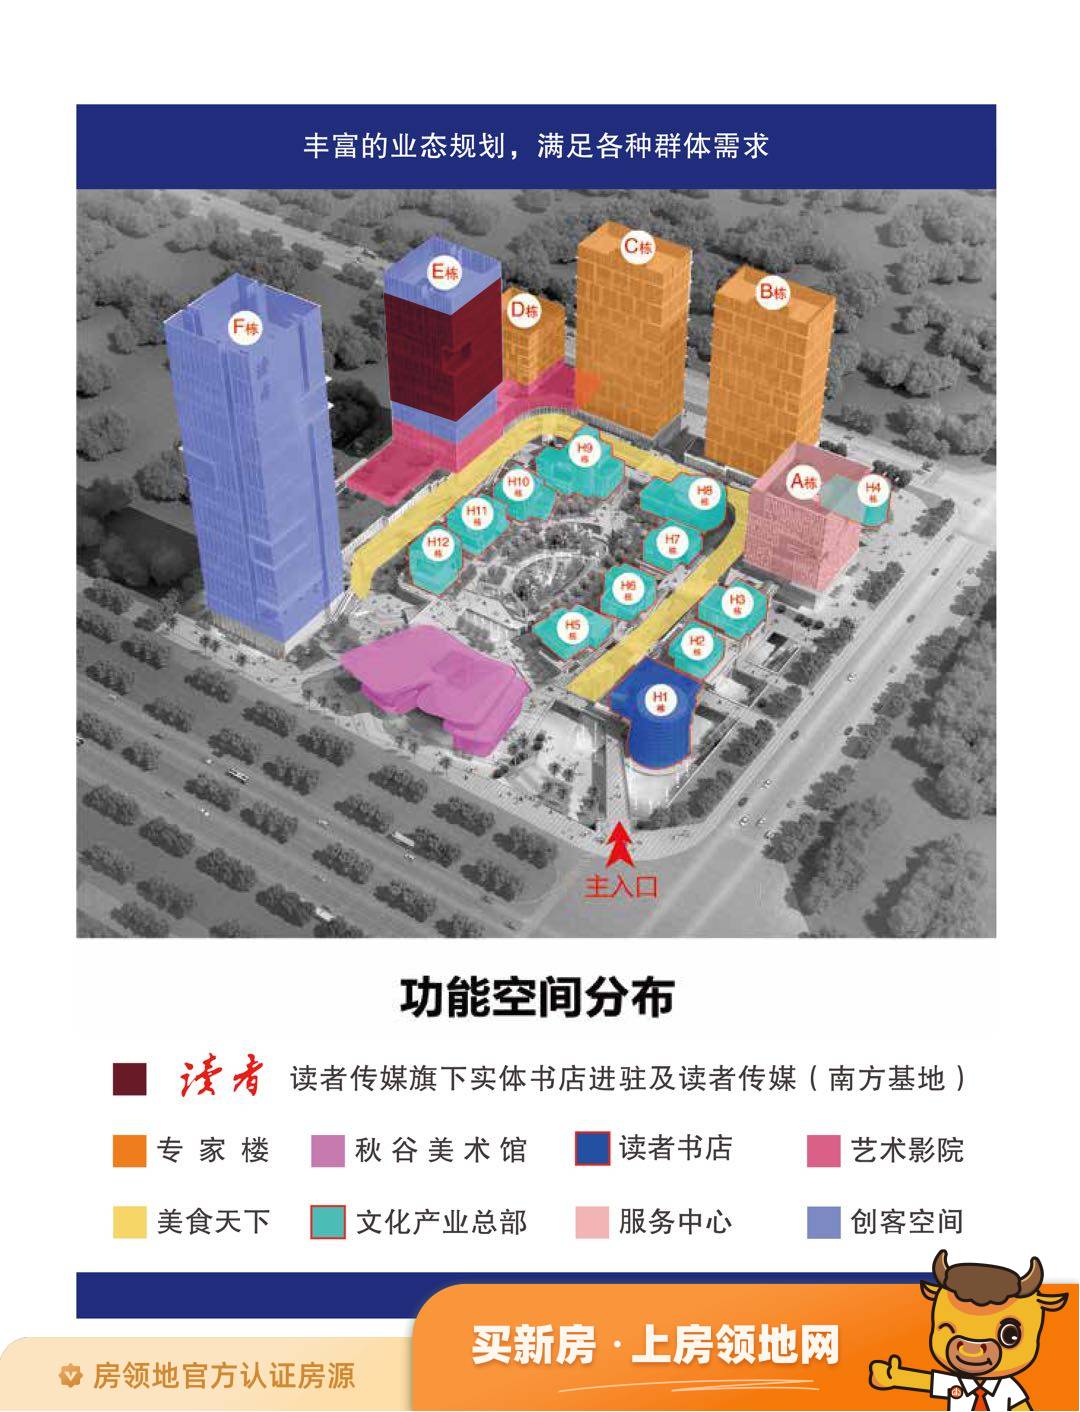 惠州读者文化园效果图1